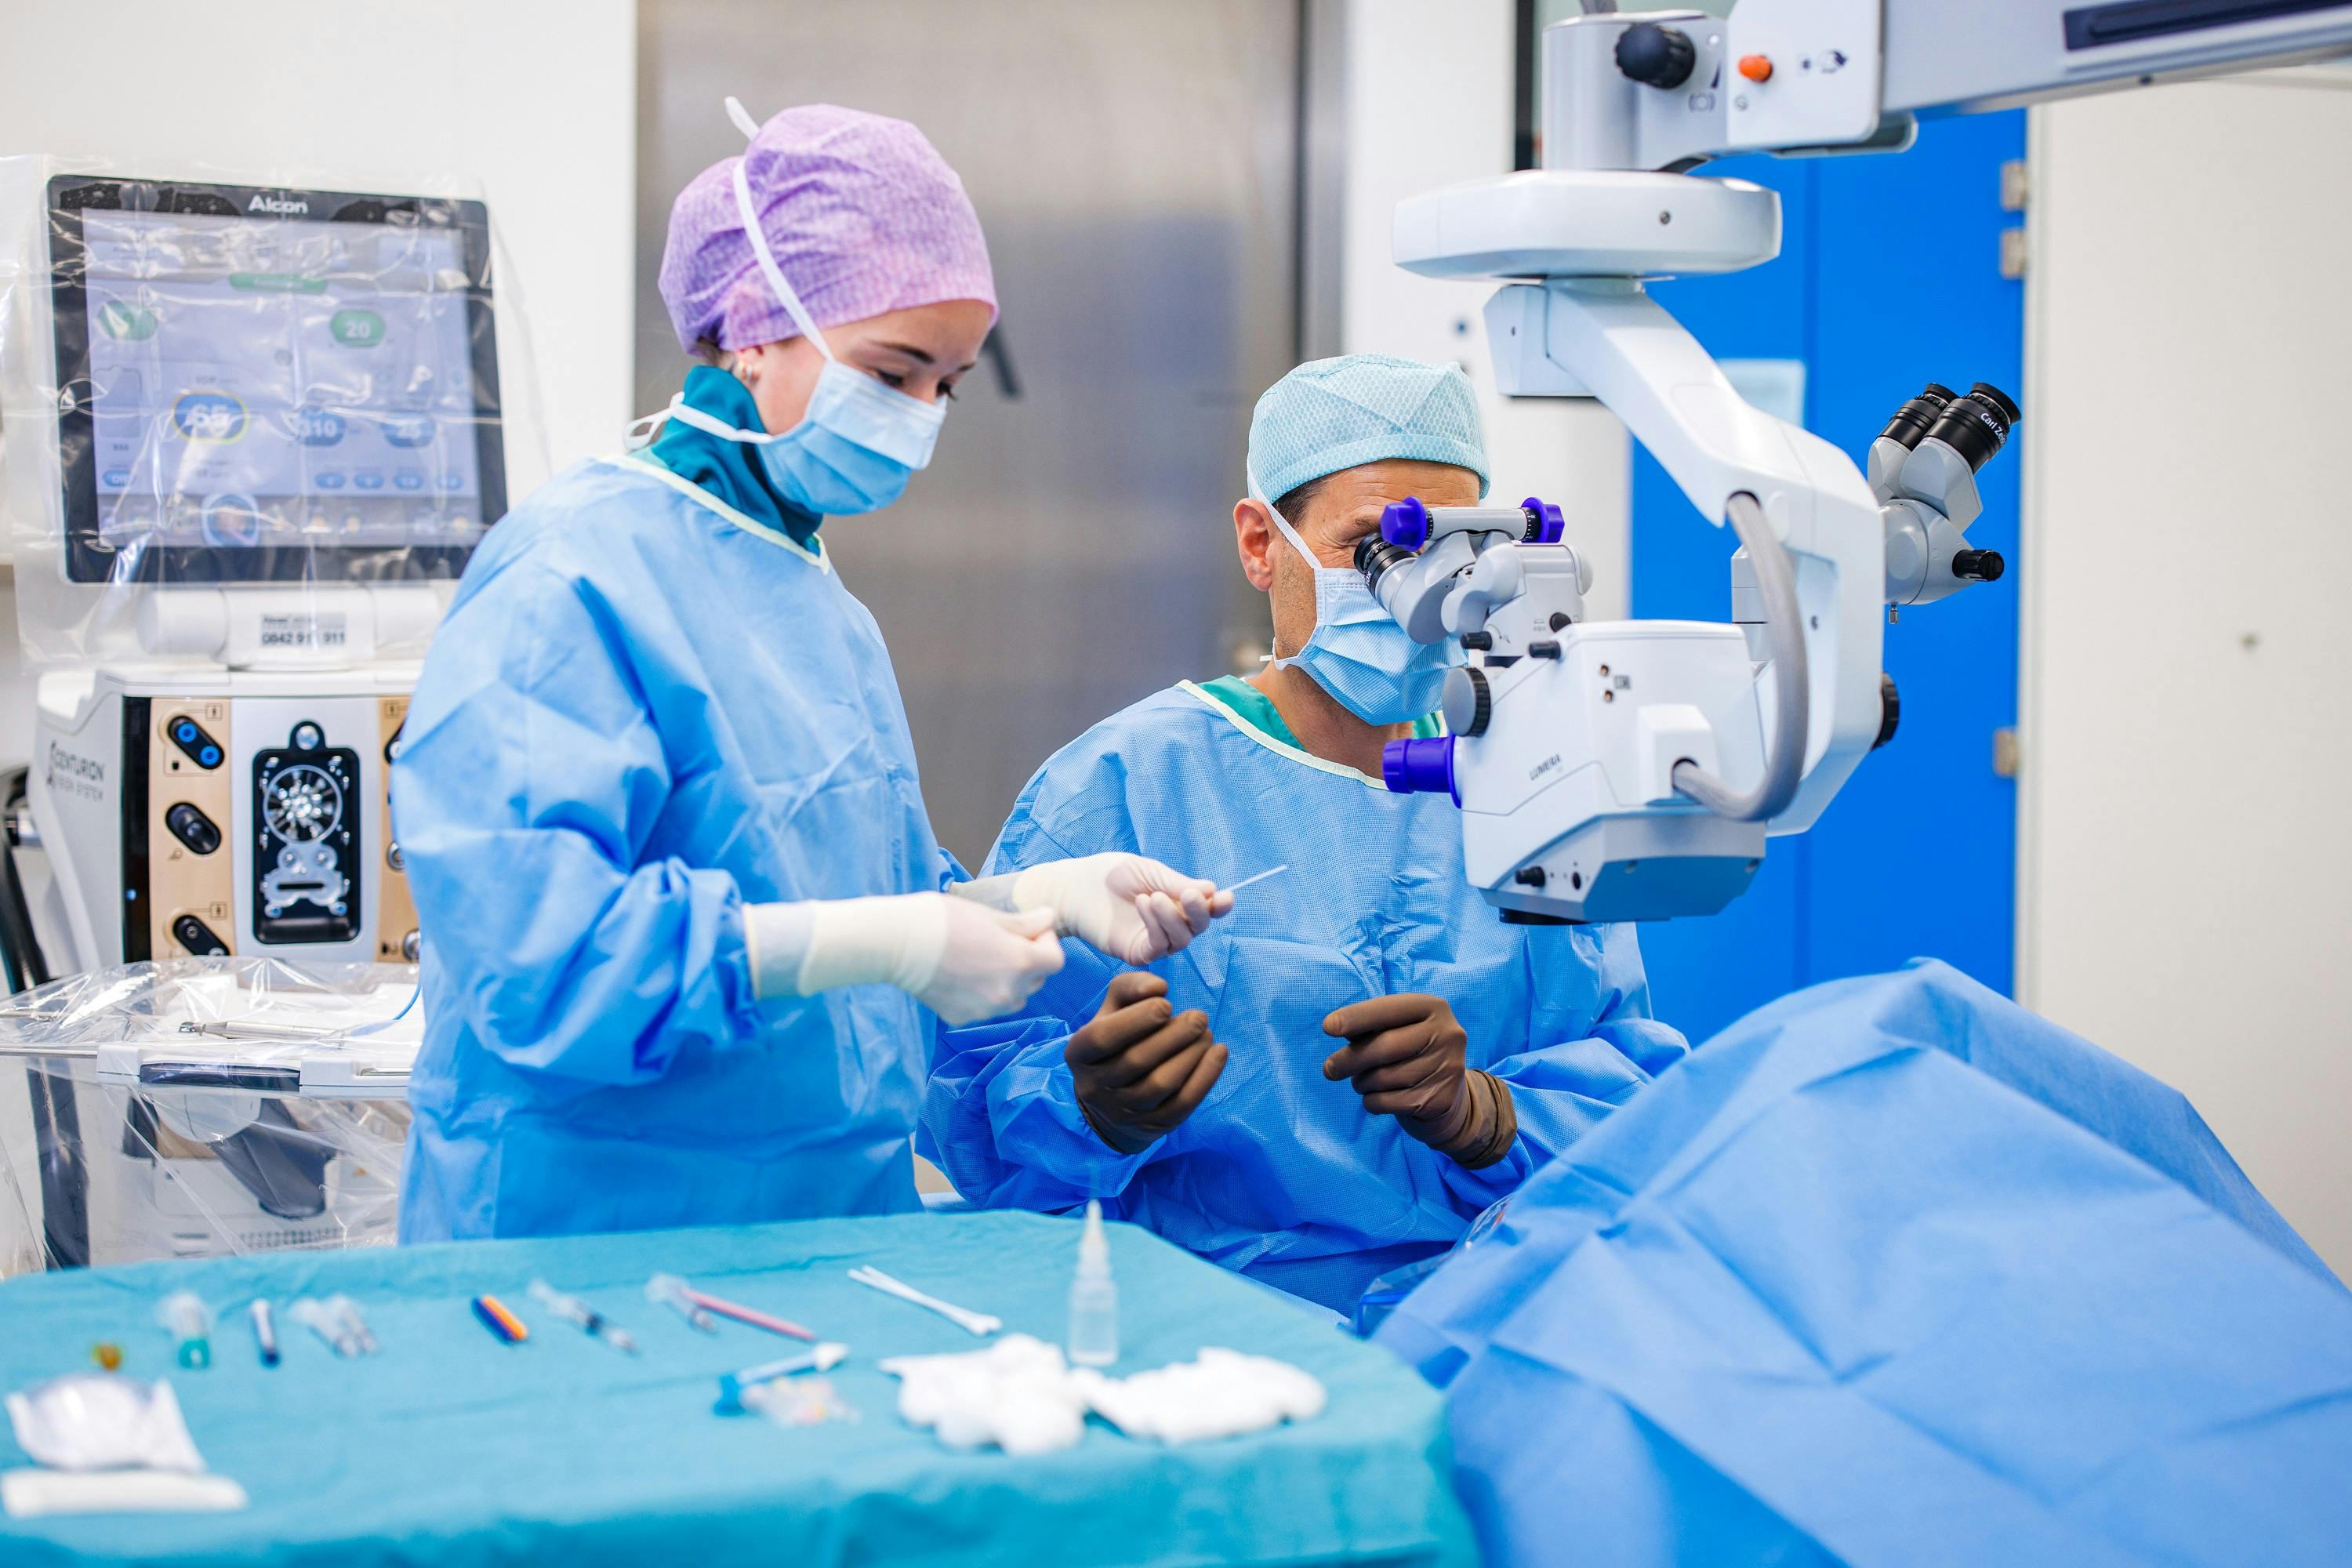 Chirurgen in blauen OP-Kleidung bei der Arbeit mit Mikroskop und Instrumenten.